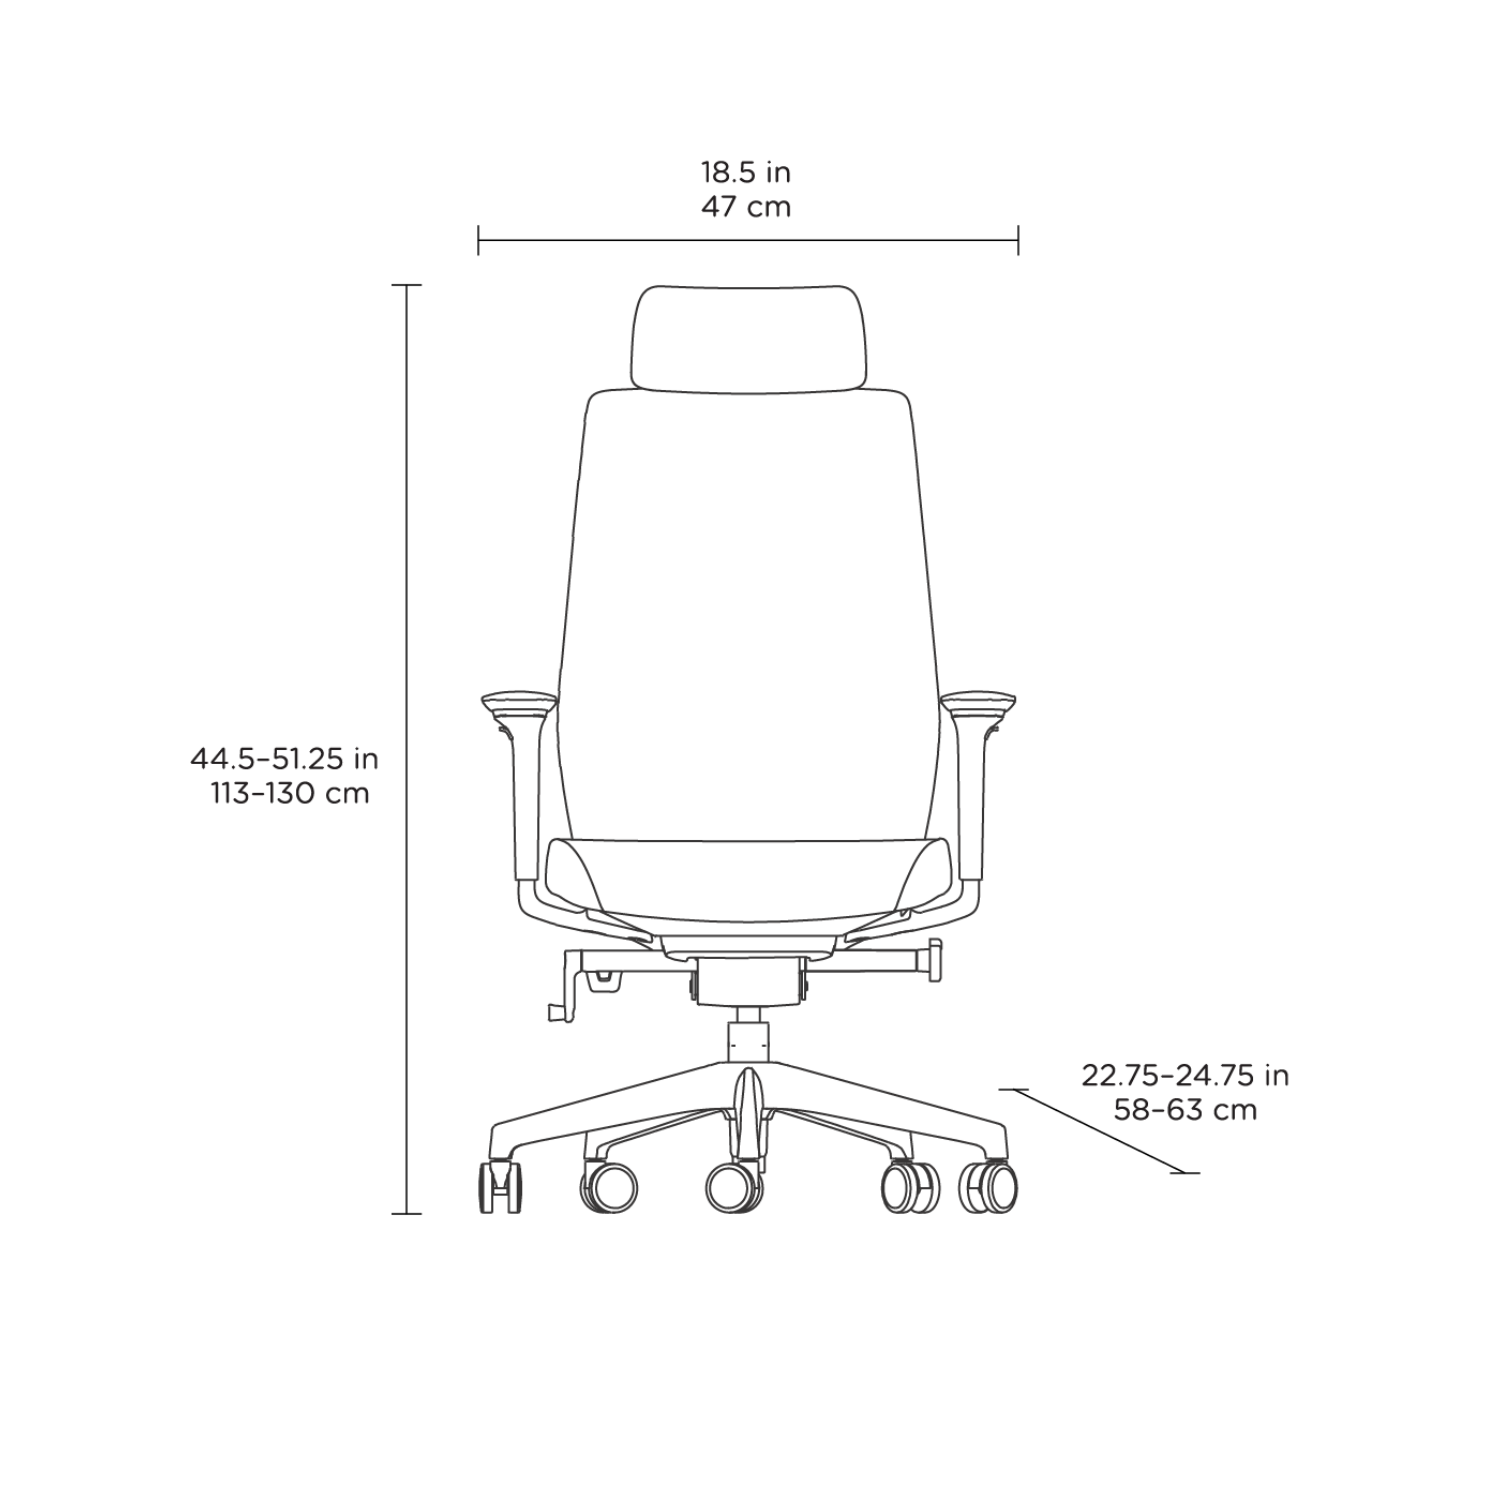 Coda Chair Dimensions 